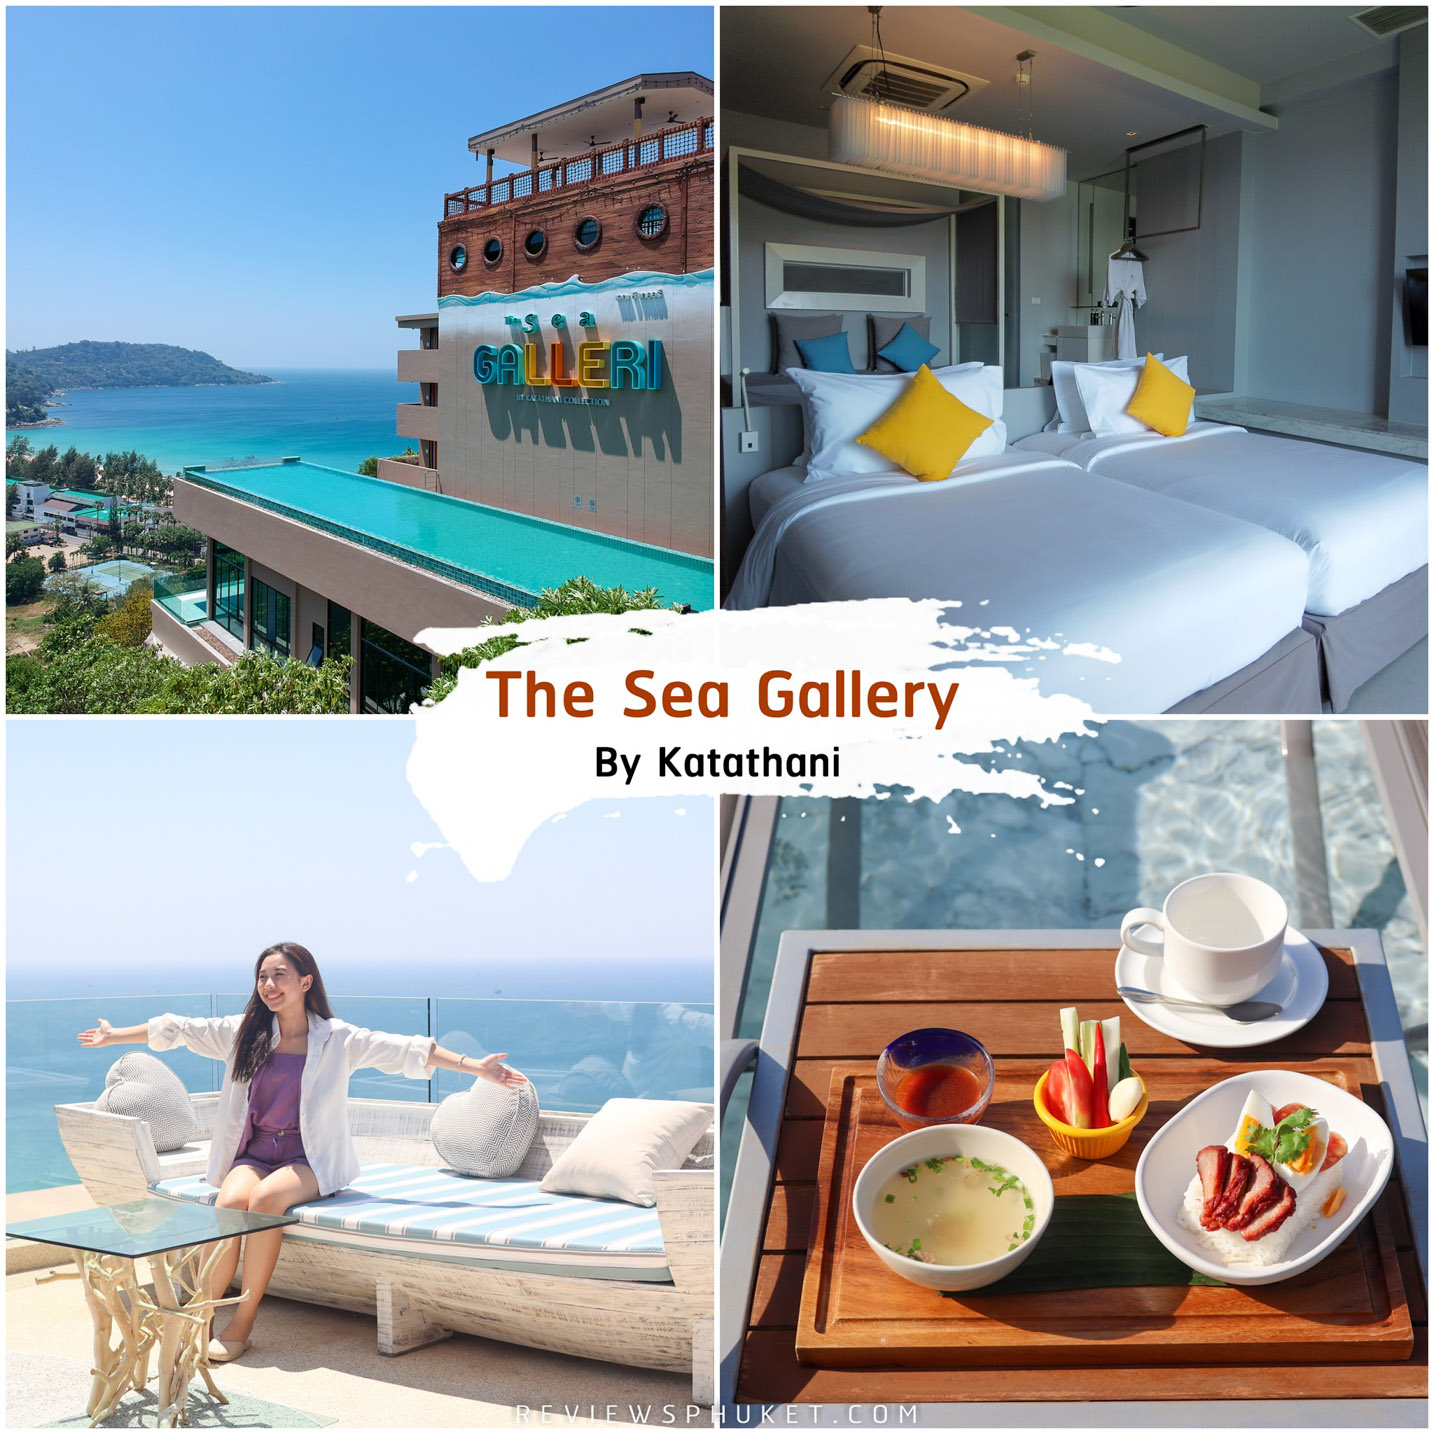 The-Sea-Galleri ที่พักภูเก็ต-แบบเด็ดสุดๆ-อันดับ-1-ในดวงใจกันเลยครับ-ที่นี่ชื่อว่า-The-Sea-Galleri-เป็นโรงแรมในเครือกะตะธานี-ที่มีโรงแรมอยู่ด้านล่างหาดชื่อว่า-Katathani-Phuket-Beach-Resort-และ-The-Shore-at-Katathani-อะกลับมาที่โรงแรมเดอะซี-แกลเลอรี่กัน-ที่นี่บอกเลยจุดเด่นคือการดีไซน์-เป็นการออกแบบสไตล์รุ่นใหม่-โมเดิร์น-Art-ใช้ตัวหลักตัวเด่นของเรือเป็นส่วนที่ดำเนินเรื่องราว-แอดเรียกได้ว่าเป็นดินแดนสุดแสนโรแมนติกเลยล่ะ-ตั้งแต่เข้ามาในห้องพักคือแบบ-Modern-สุดๆทั้งเตียง-ทั้งโคมไฟ-ห้องน้ำ-ถูกจัดเรียงมาอย่างดี-แถมยังมีอ่างอาบน้ำจากุชชี่ใหญ่ๆ-ให้นอนแช่ตีโฟม-ชมทะเลภูเก็ตแบบวิวหลักล้านกันด้วยเลยครับ-อะรีวิวกันต่อในส่วนของโซนร้านอาหาร-มีโซนทางด้านเรือ-และโซนทางด้านสระว่ายน้ำ-ทั้ง-2-แบบคือฟิลลิ่งแตกต่างกัน-แบบหนึ่งคือสไตล์ชิวๆ-ริมสระ-และอีกแบบคือสไตล์ดินเนอร์หรูๆ-บนตัวเรือ-และใกล้ๆตัวเรือ-แบบวิวหลักล้านกันเลยครับ-ในส่วนของเมนูแนะนำ-แอดยังย้ำเมนูเดิม-----ข้าวต้มแห้ง-และ-ข้าวหมูแดง--บอกเลยว่าอร่อยสุดๆ-ไม่แพ้ที่ไหนเลยครับ-รีวิวกันต่อในส่วนของพนักงานน่ารัก-บริการดีประทับใจครับ-บอกเลยว่าดีย์จริงน้าา-คอนเฟิร์มเลย-บอกเลยว่าเป็นหนึ่งใน-ที่พักภูเก็ต-โรงแรมภูเก็ต-ที่เที่ยวภูเก็ต-ในดวงใจเลยครับ-สวยและวิวหลักล้านจริงๆน้าา-สำหรับ-The-Sea-Galleri-by-Katathani ที่พักภูเก็ต,ที่พักหรู,วิวหลักล้าน,ริมทะเล,โรงแรม,รีสอร์ท,Phuket,หาดสวย,น้ำใส